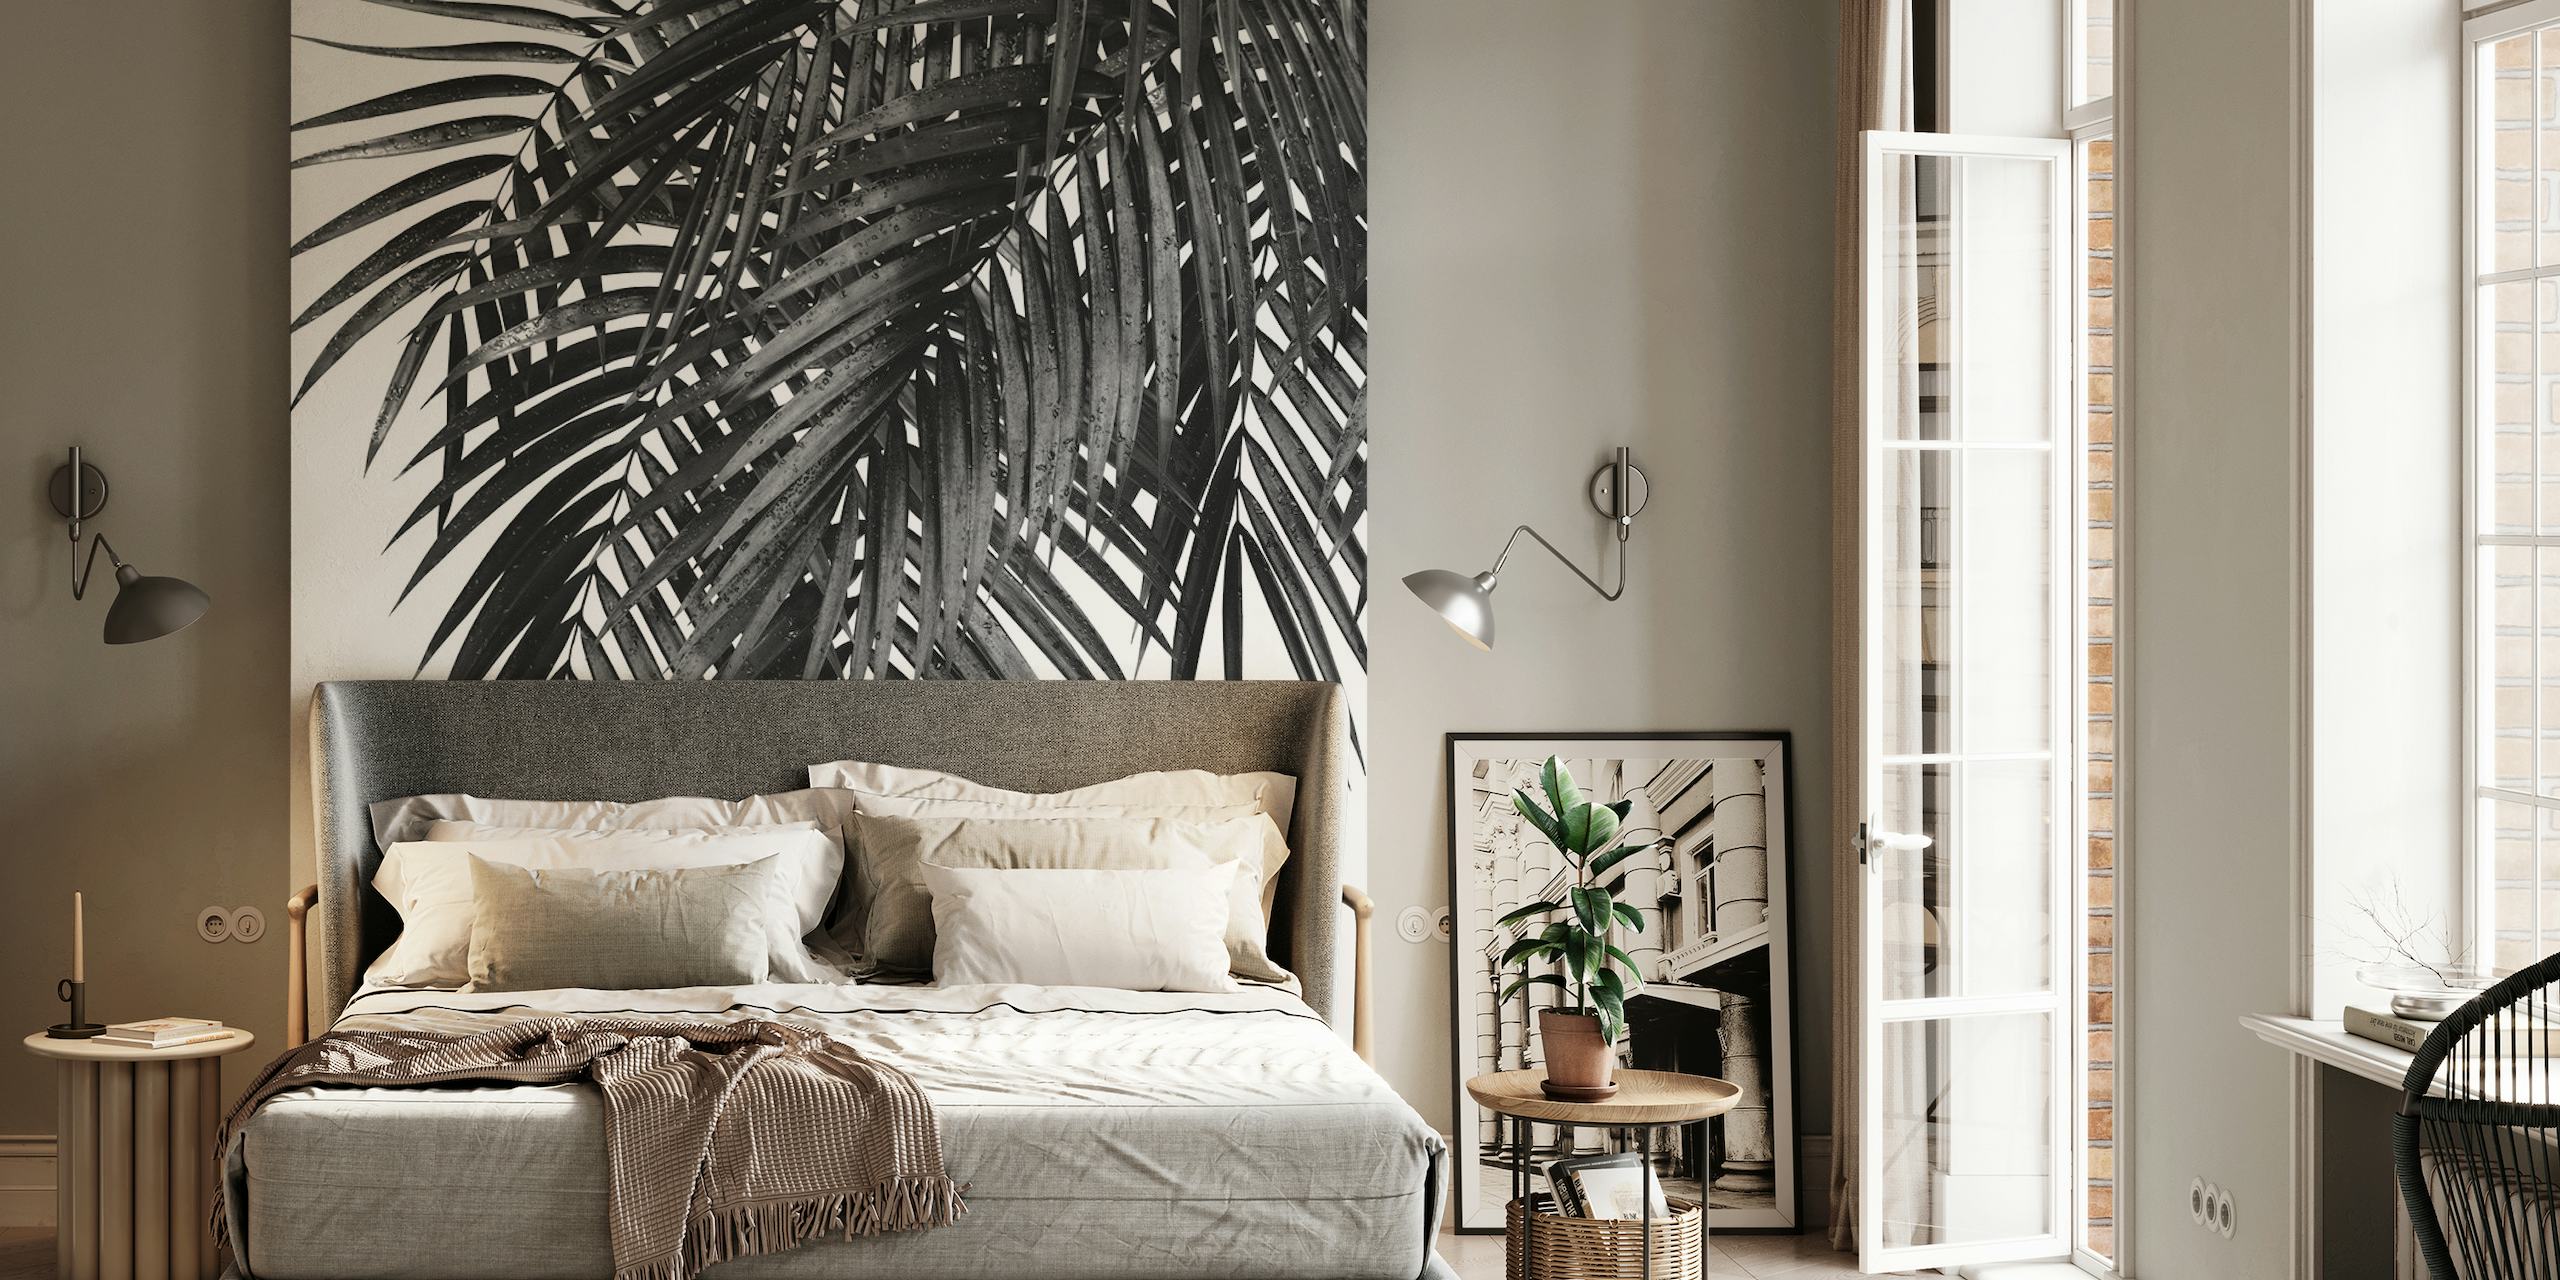 Fotomural de hojas de palma en blanco y negro para un diseño interior moderno